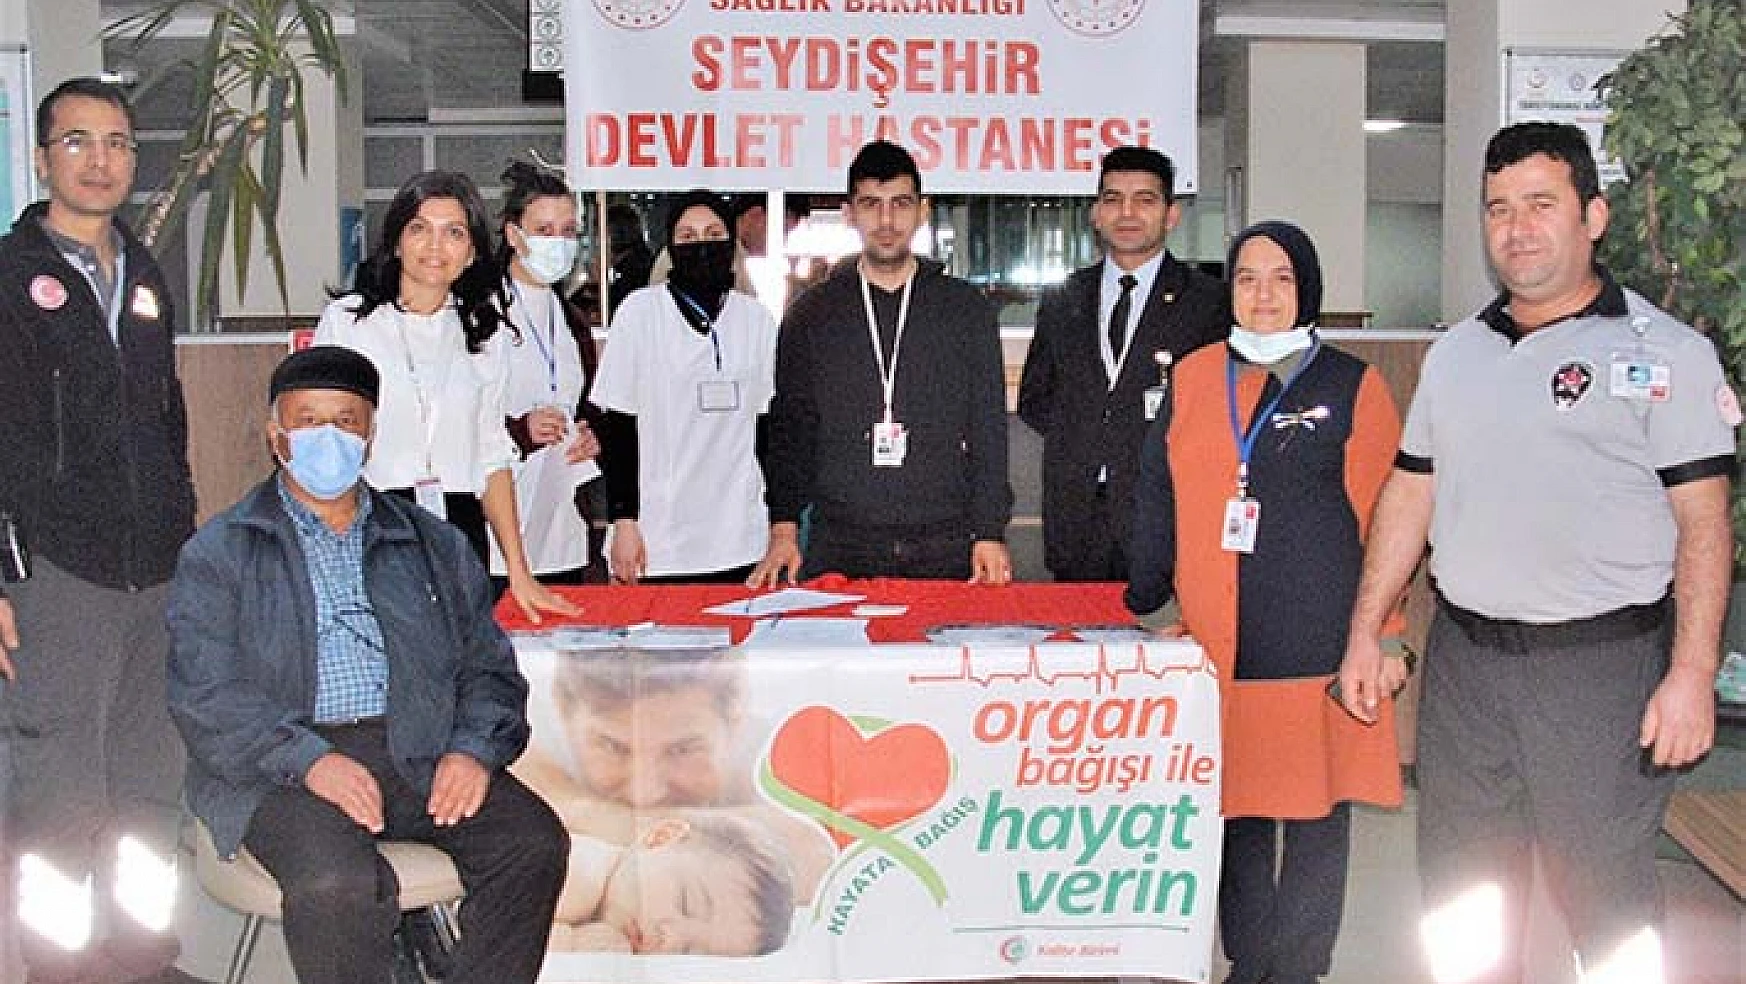 Devlet Hastanesinde 'organ bağışı ile hayat verin' kampanyası